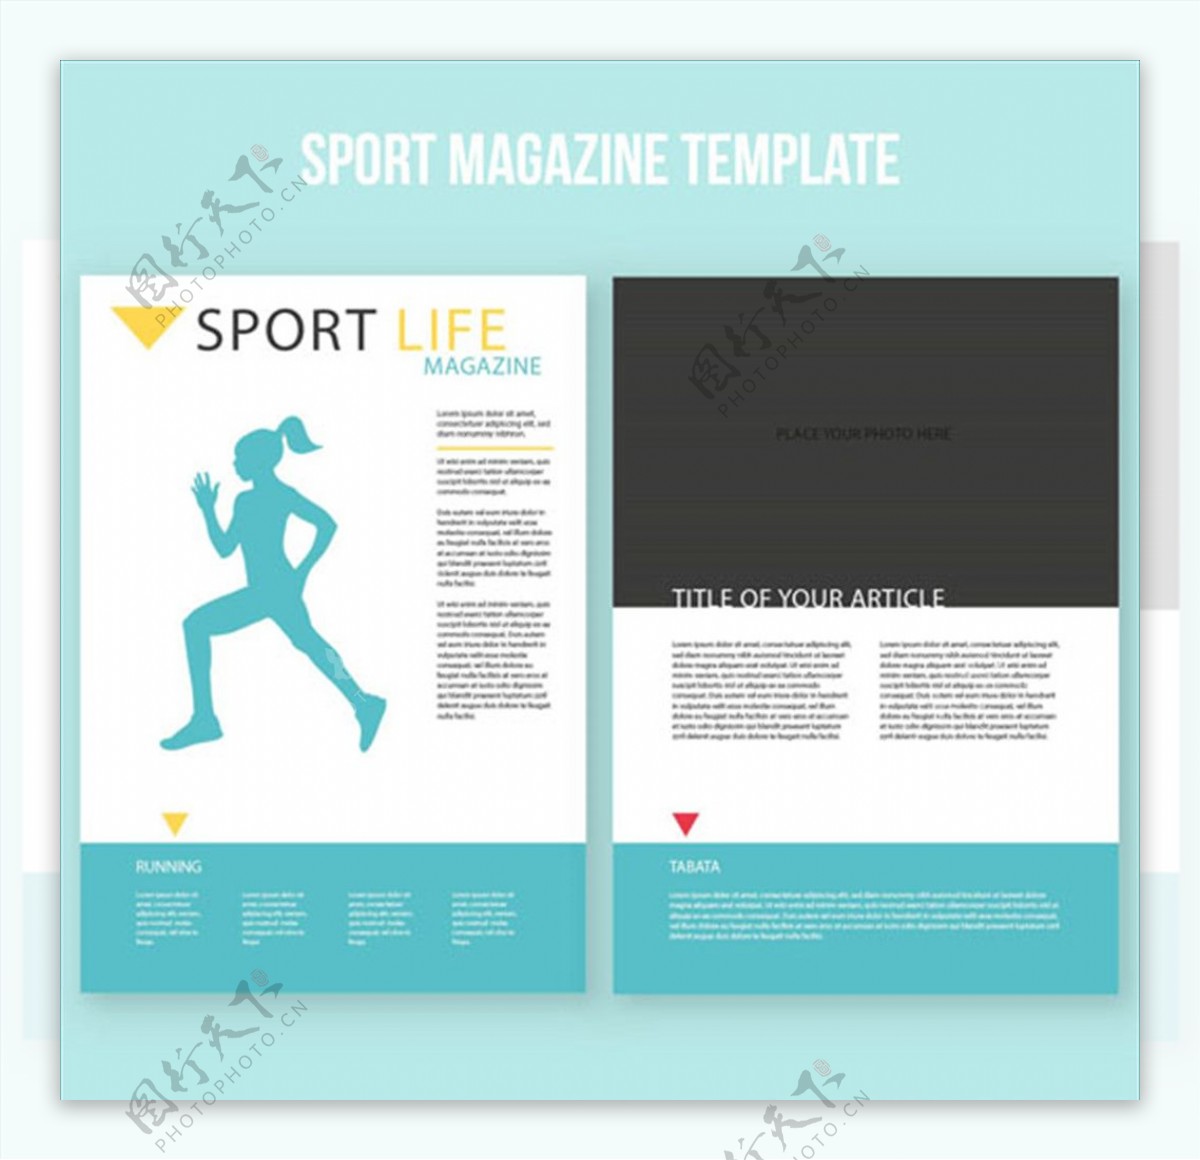 运动杂志跑步项目排版